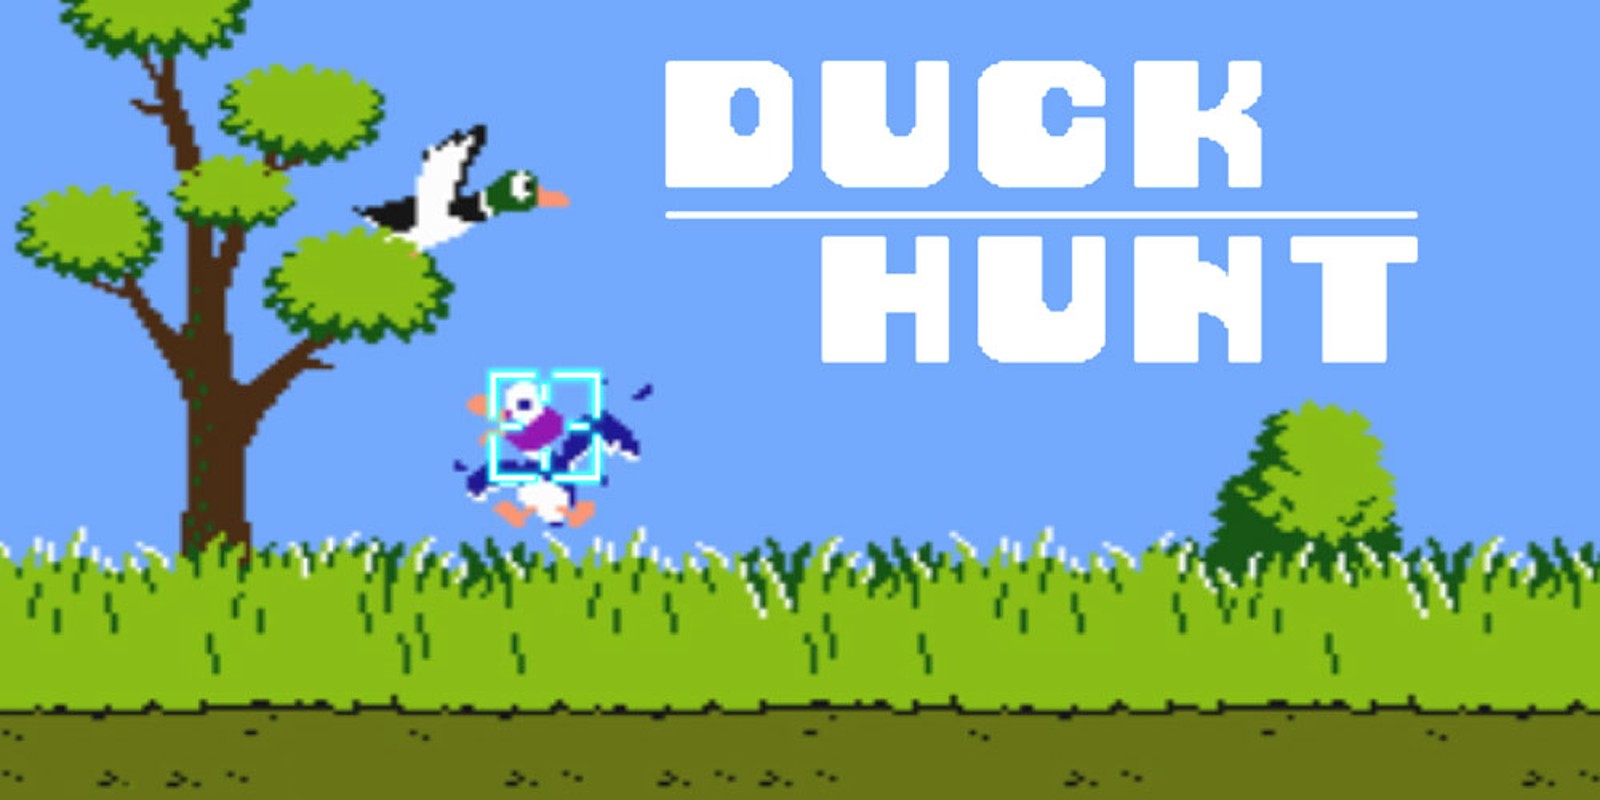 Duck Hunt NES